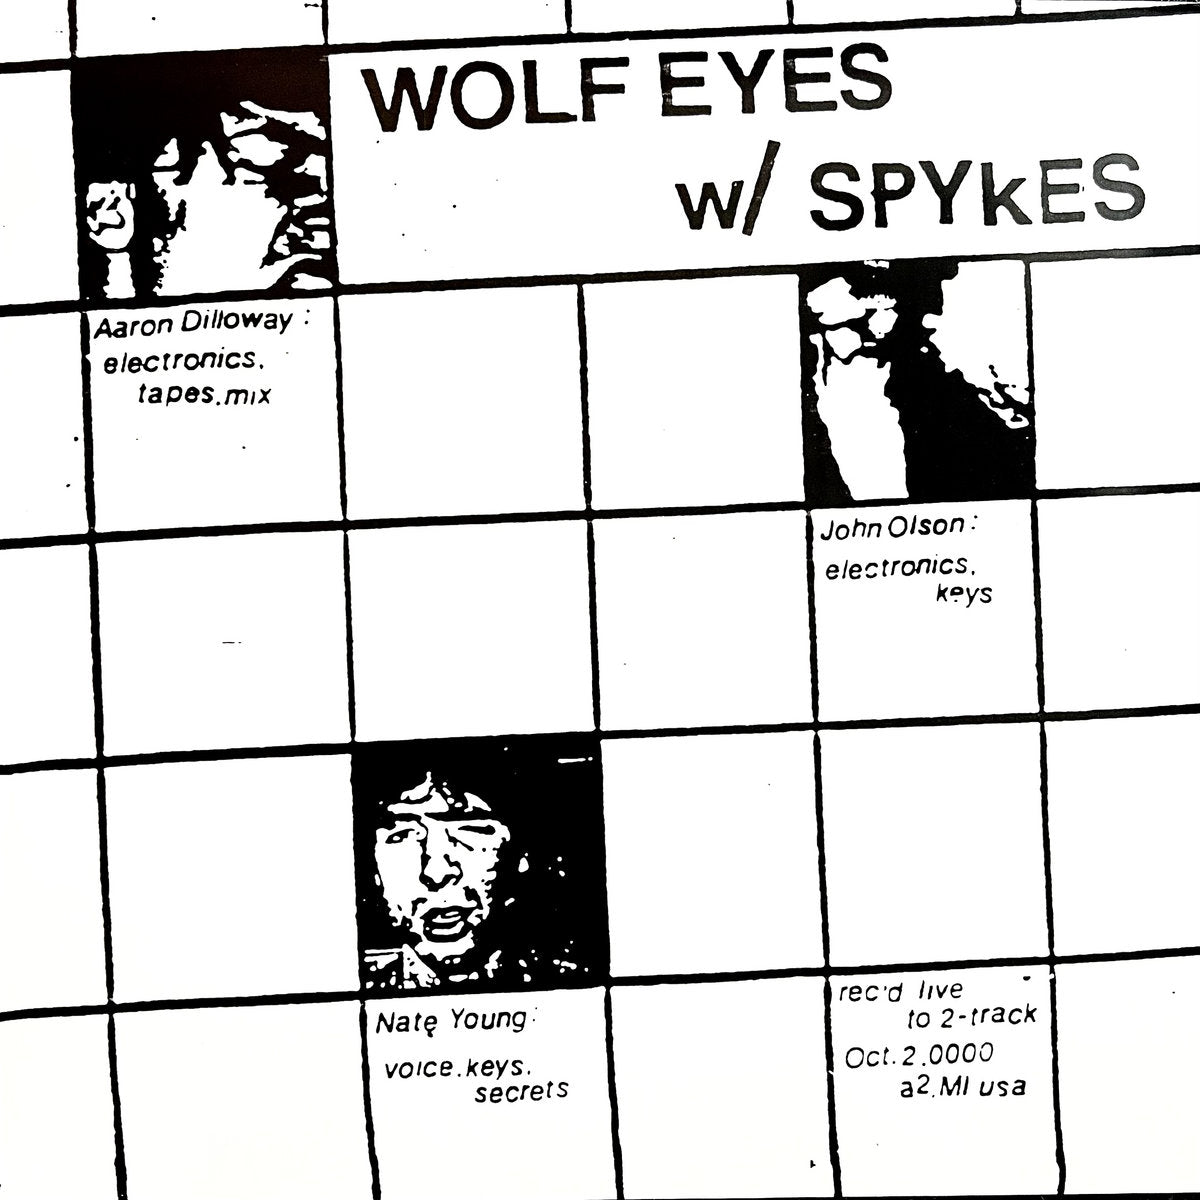 WOLF EYES W/ SPYKES - WOLF EYES W/ SPYKES Vinyl LP